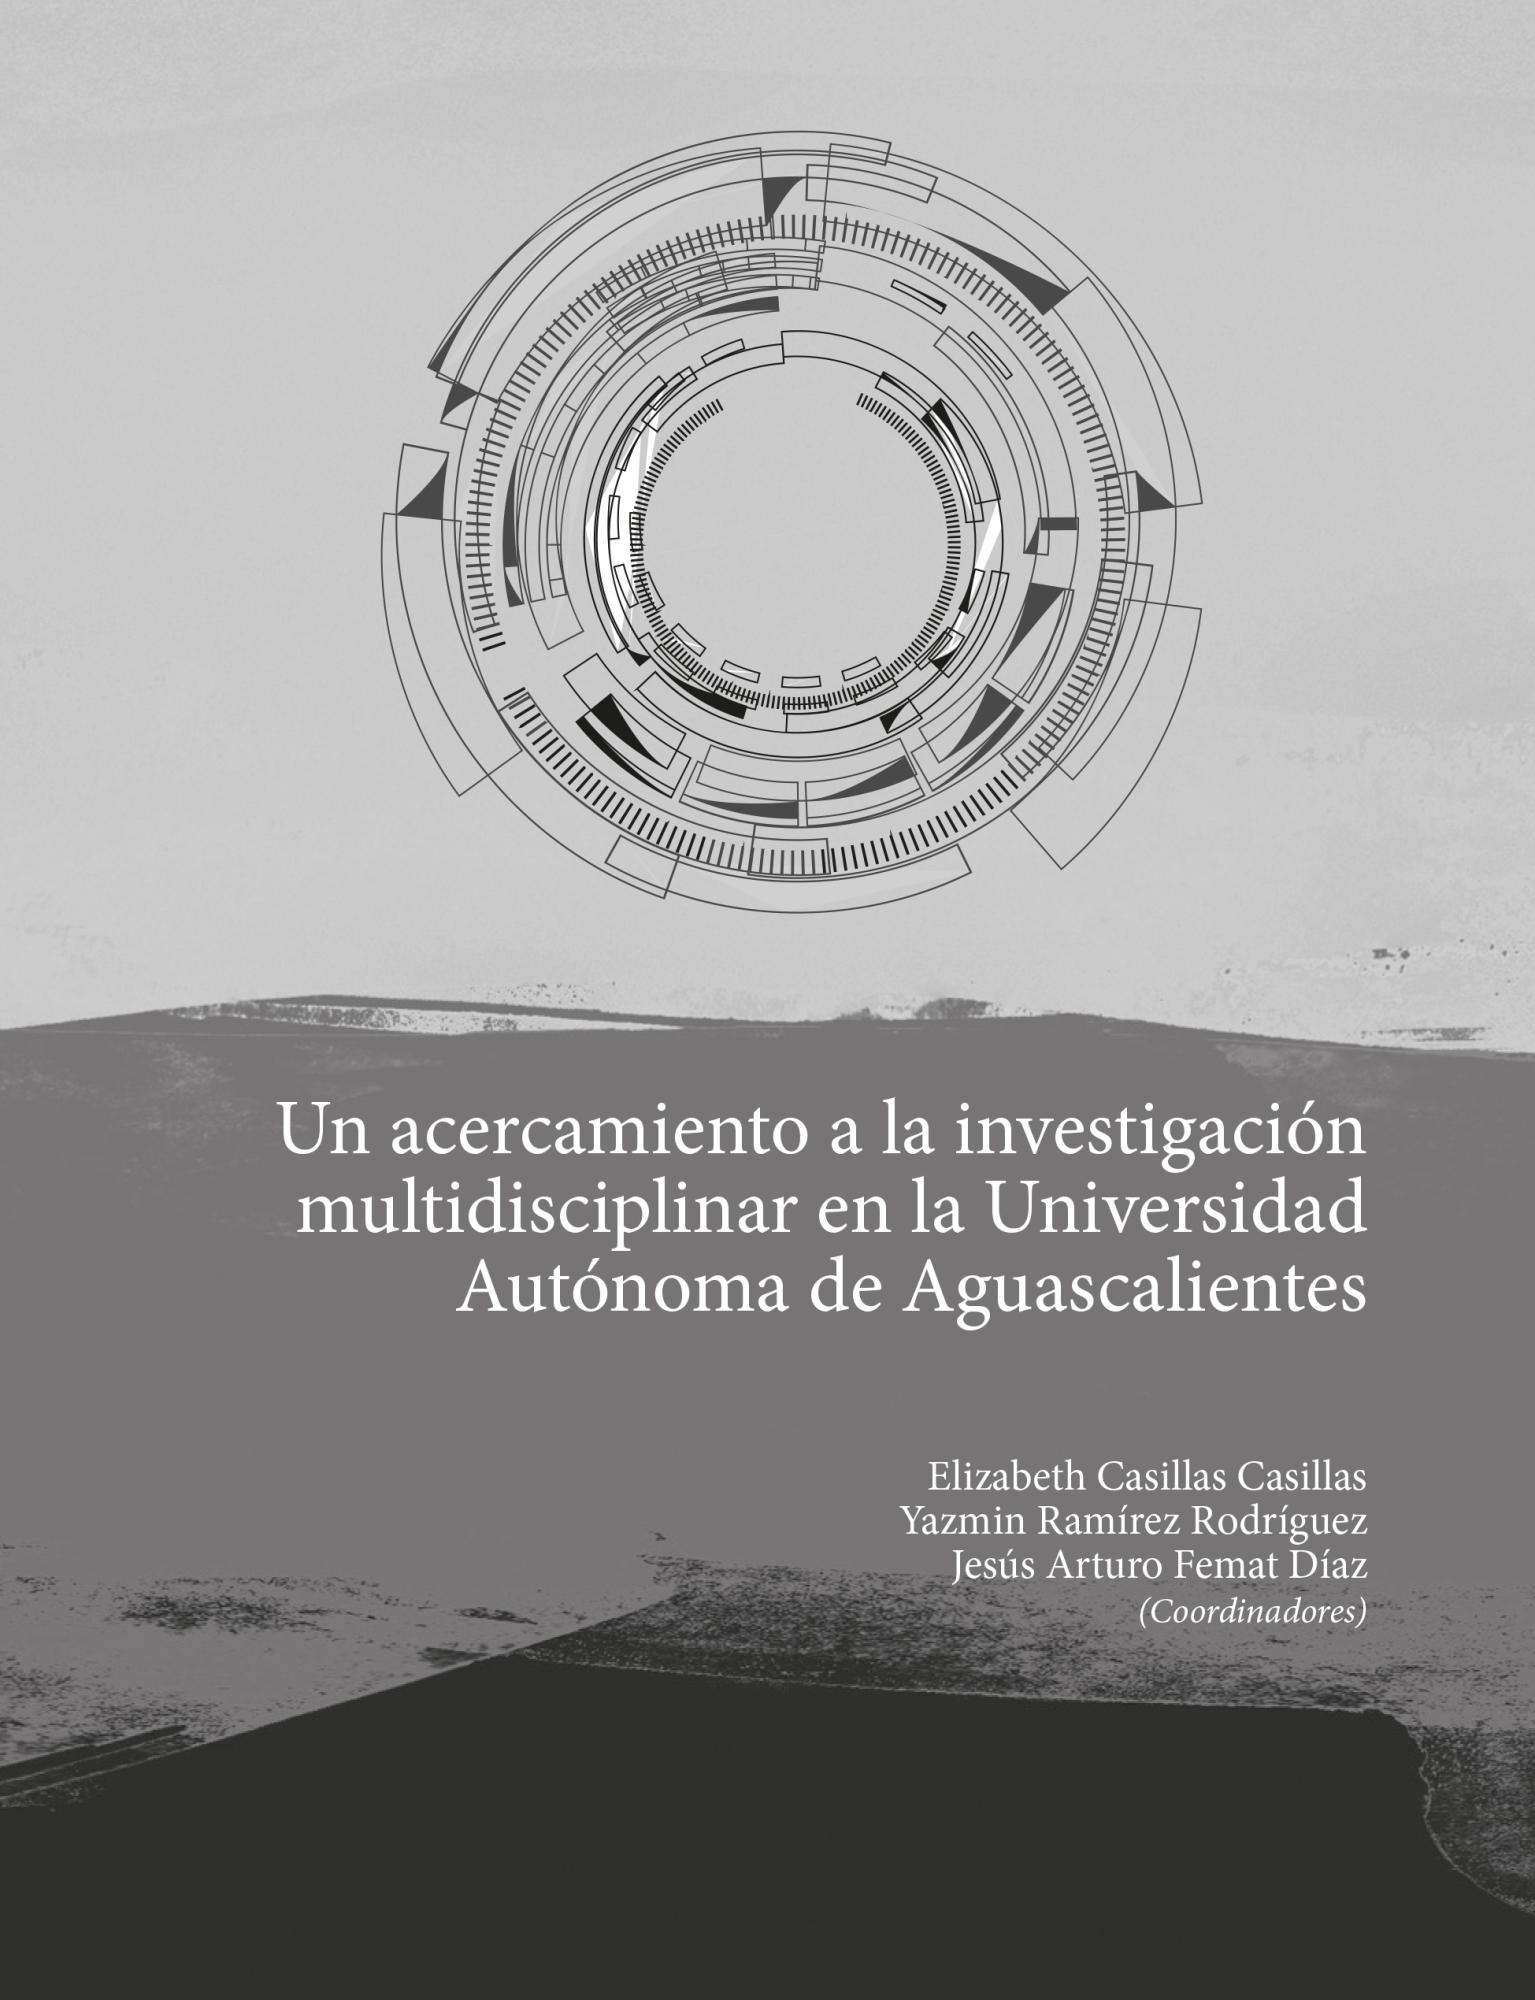  Un acercamiento a la investigación multidisciplinar en la Universidad Autónoma de Aguascalientes